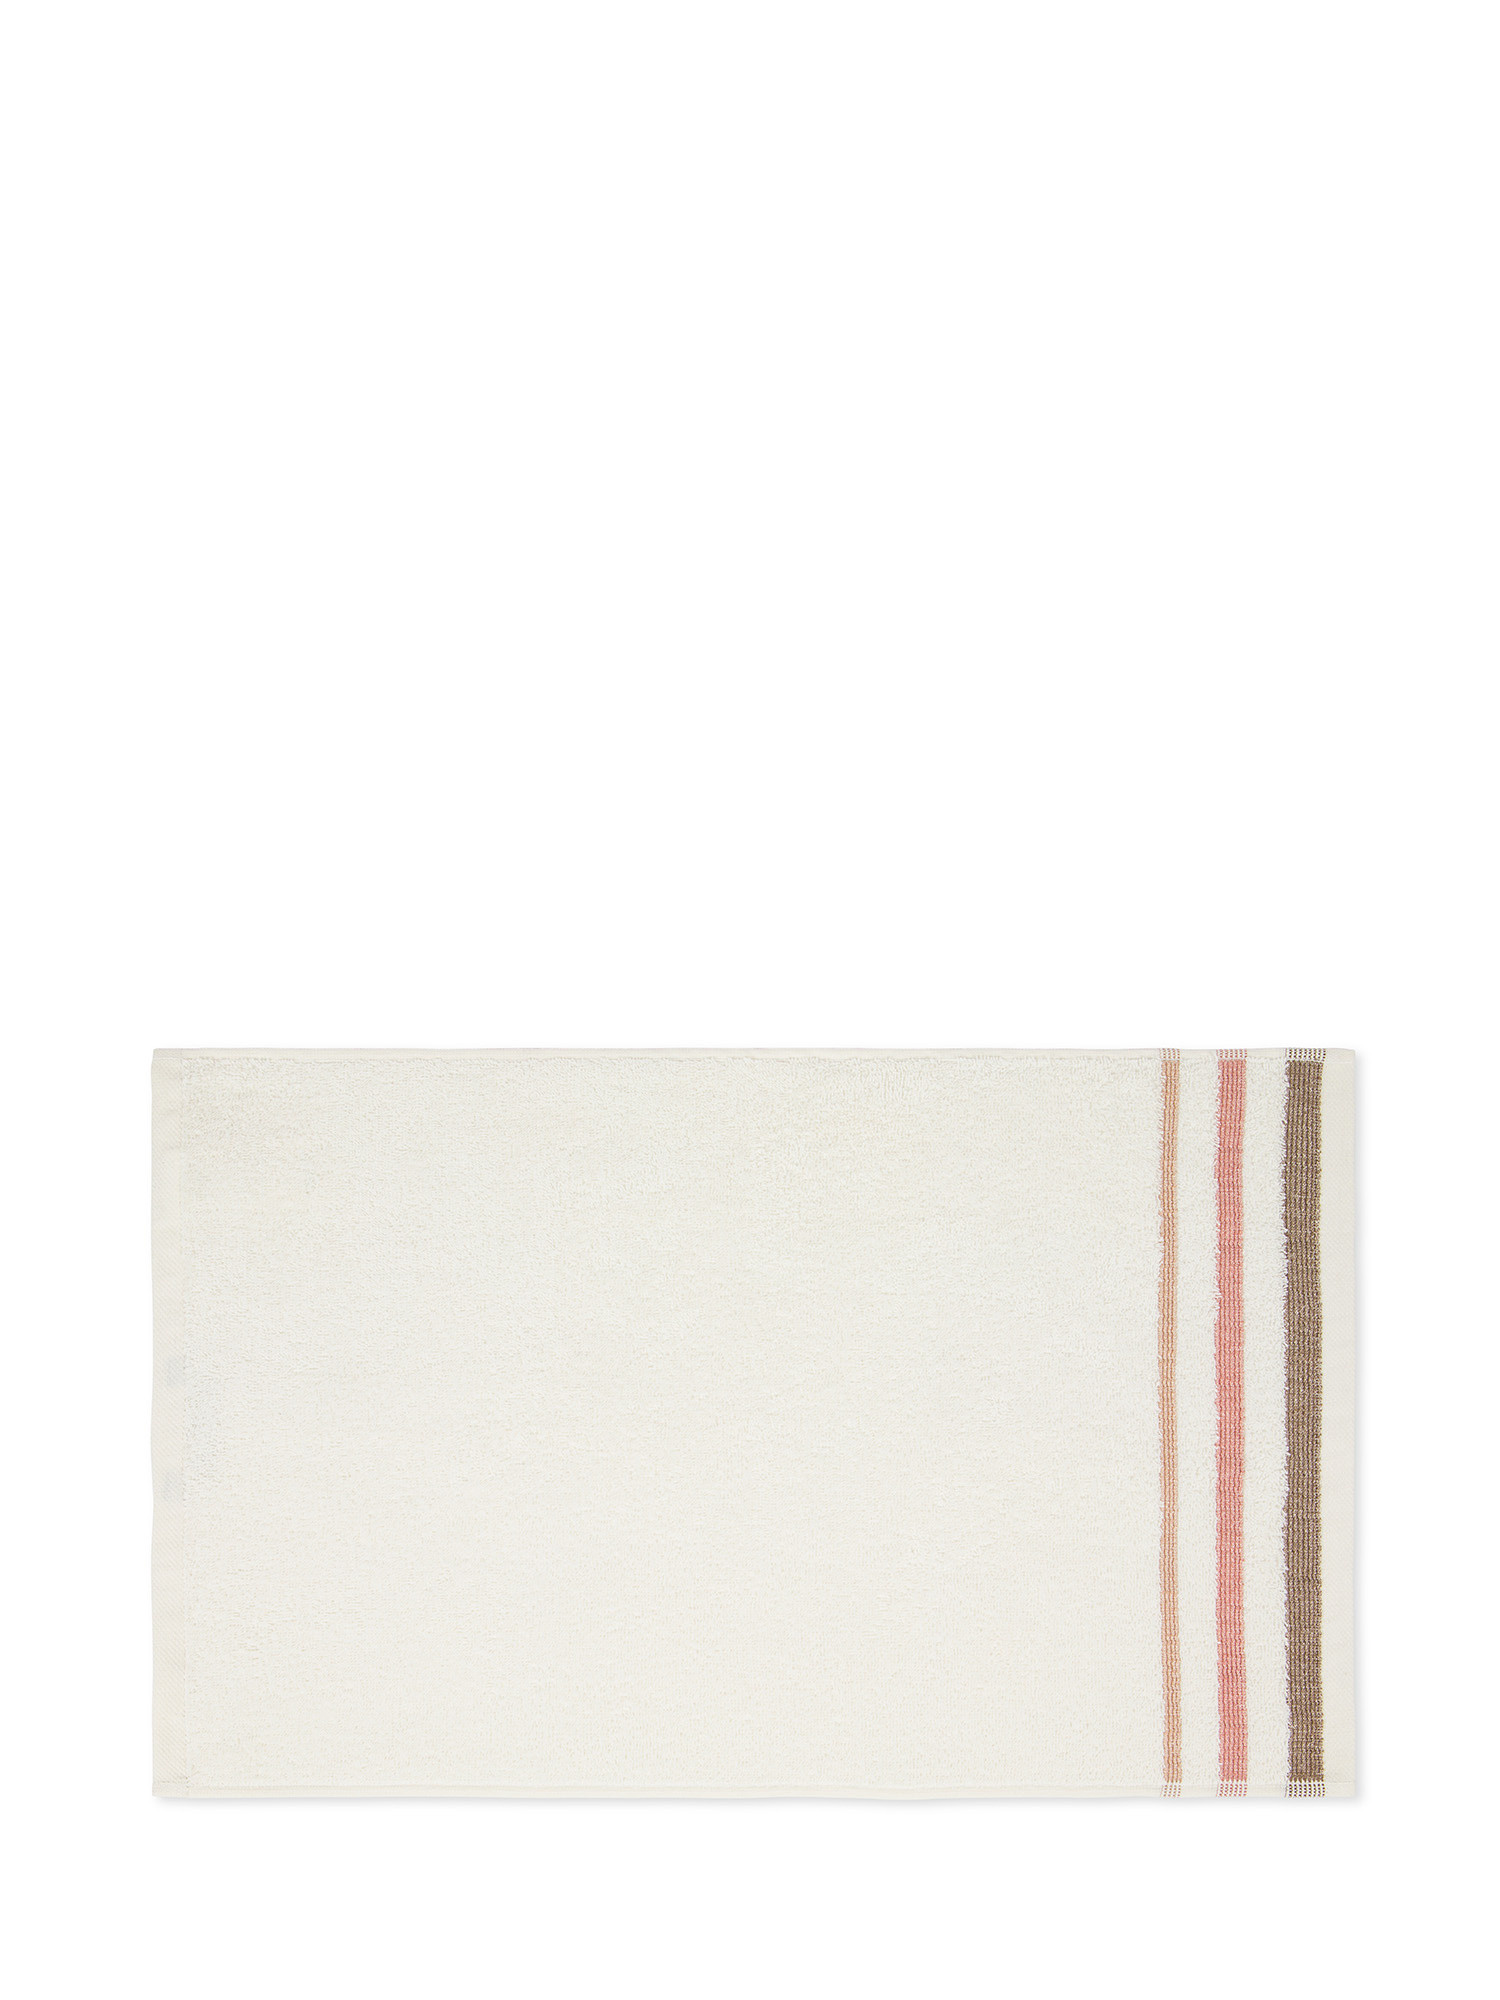 Asciugamano in spugna di cotone con bordo jacquard goffrato, Marrone, large image number 1